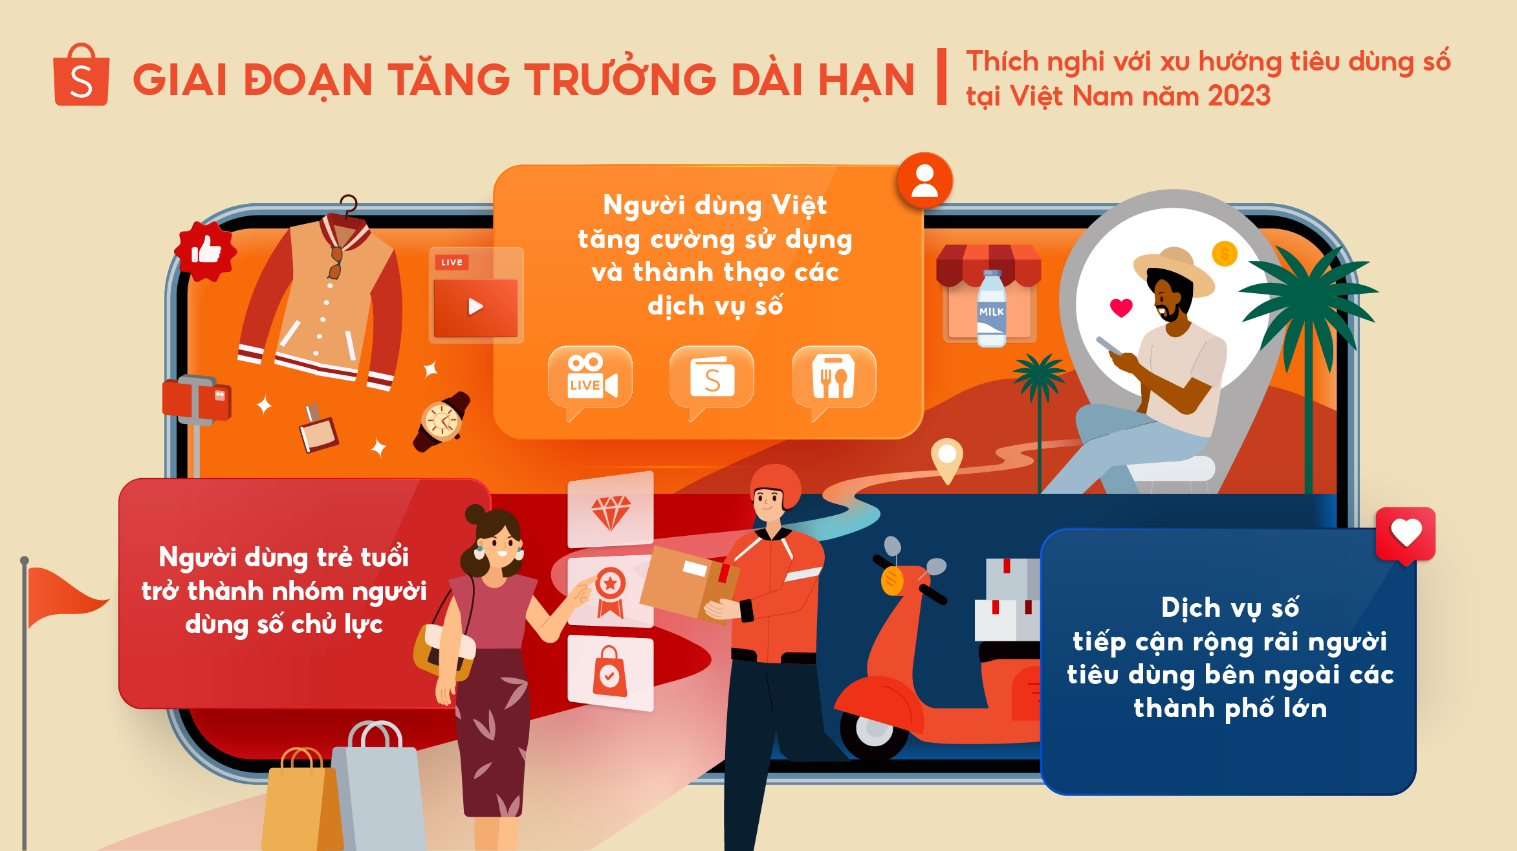 Shopee dự đoán 3 xu hướng tiêu dùng nổi bật tại Việt Nam trong năm 2023 - Ảnh 2.